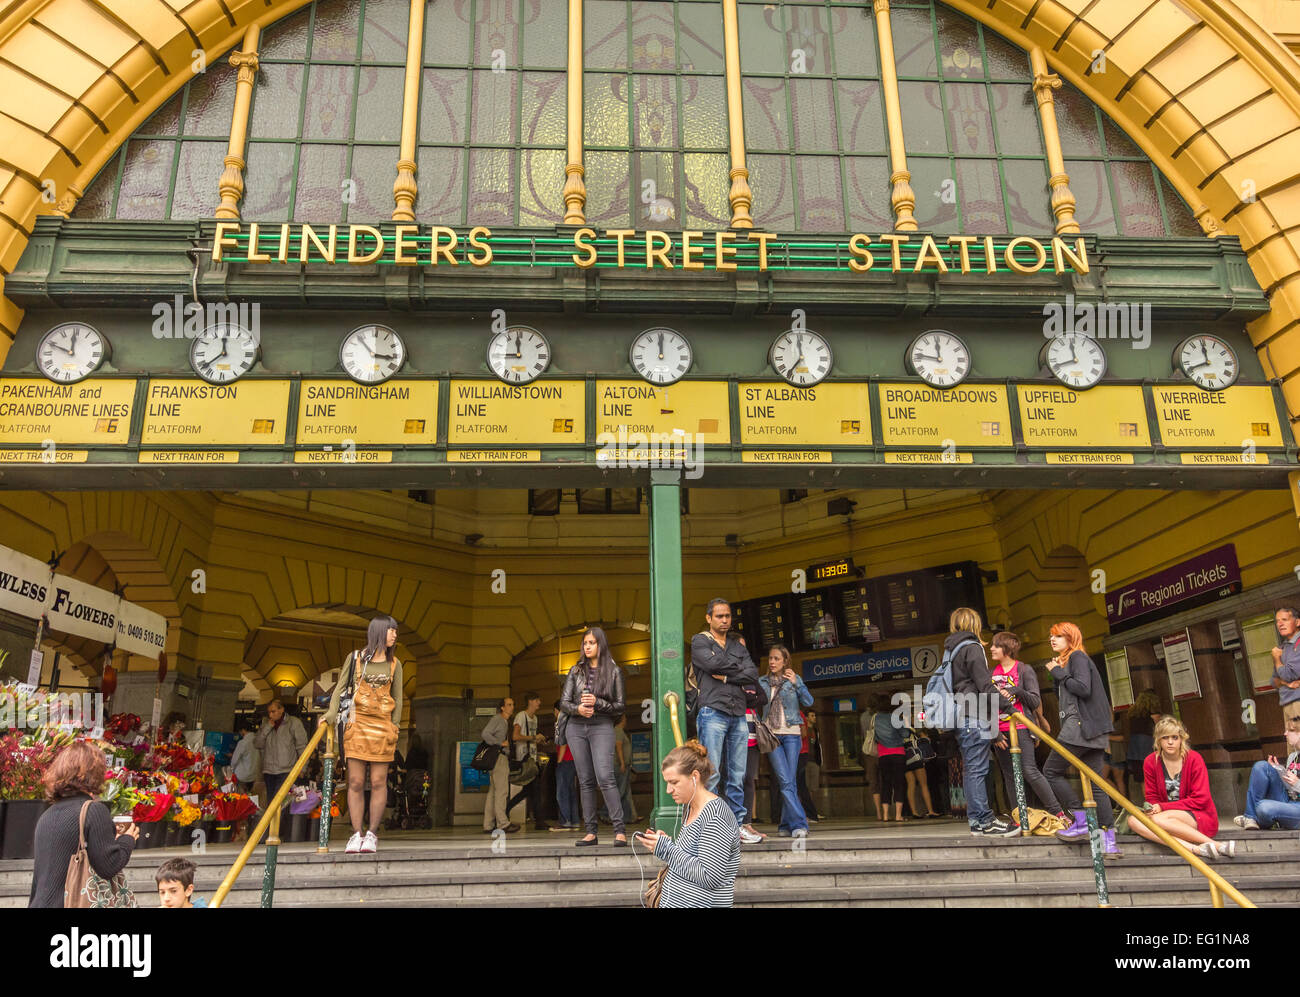 Unter die Uhren am Bahnhof Flinders Street, Melbourne Australien Stockfoto